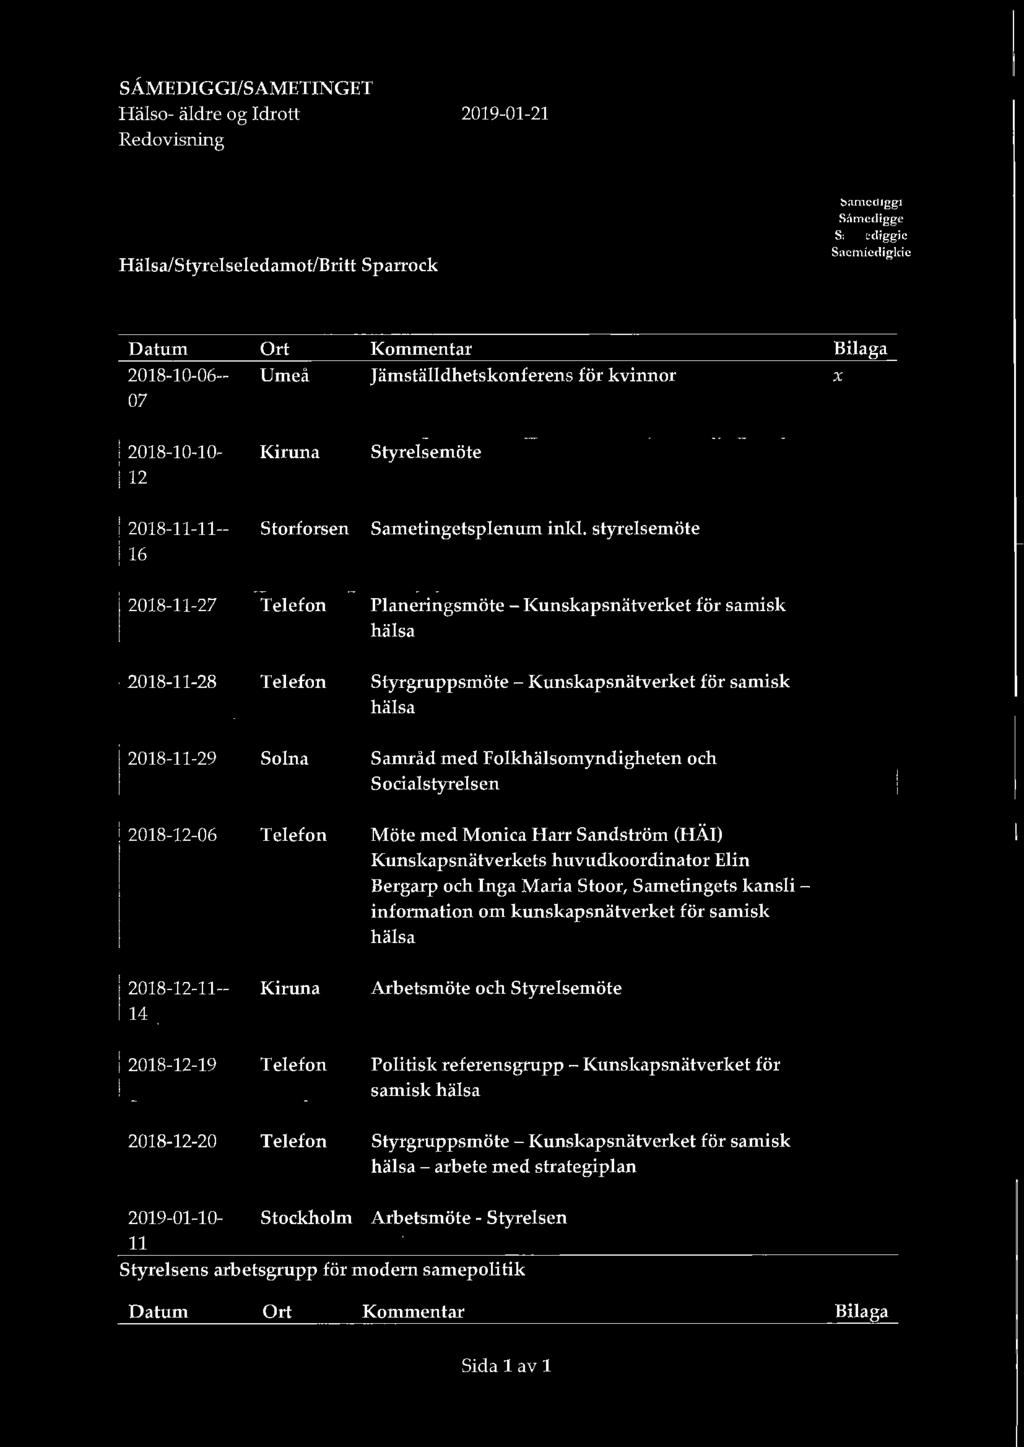 kansli - information om kunskapsnätverket för samisk hälsa 2018-12-11-- Kiruna Arbetsmöte och Styrelsemöte 14 2018-12-19 Telefon Politisk referensgrupp - Kunskapsnätverket för samisk